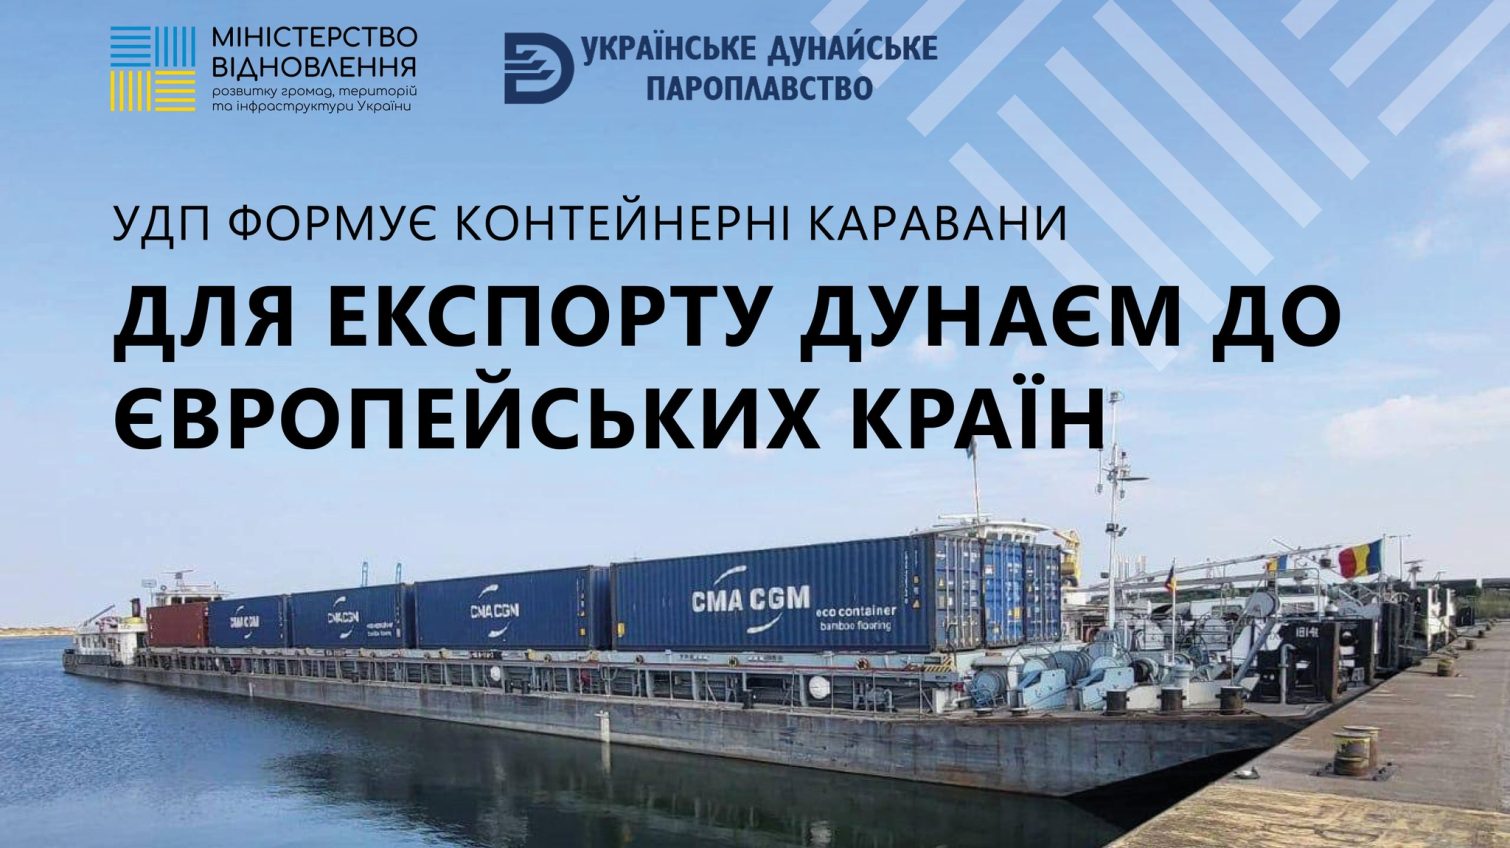 Через блокаду західного кордону УДП на Одещині формує контейнерні каравани для перевезення агроекспорту Дунаєм «фото»